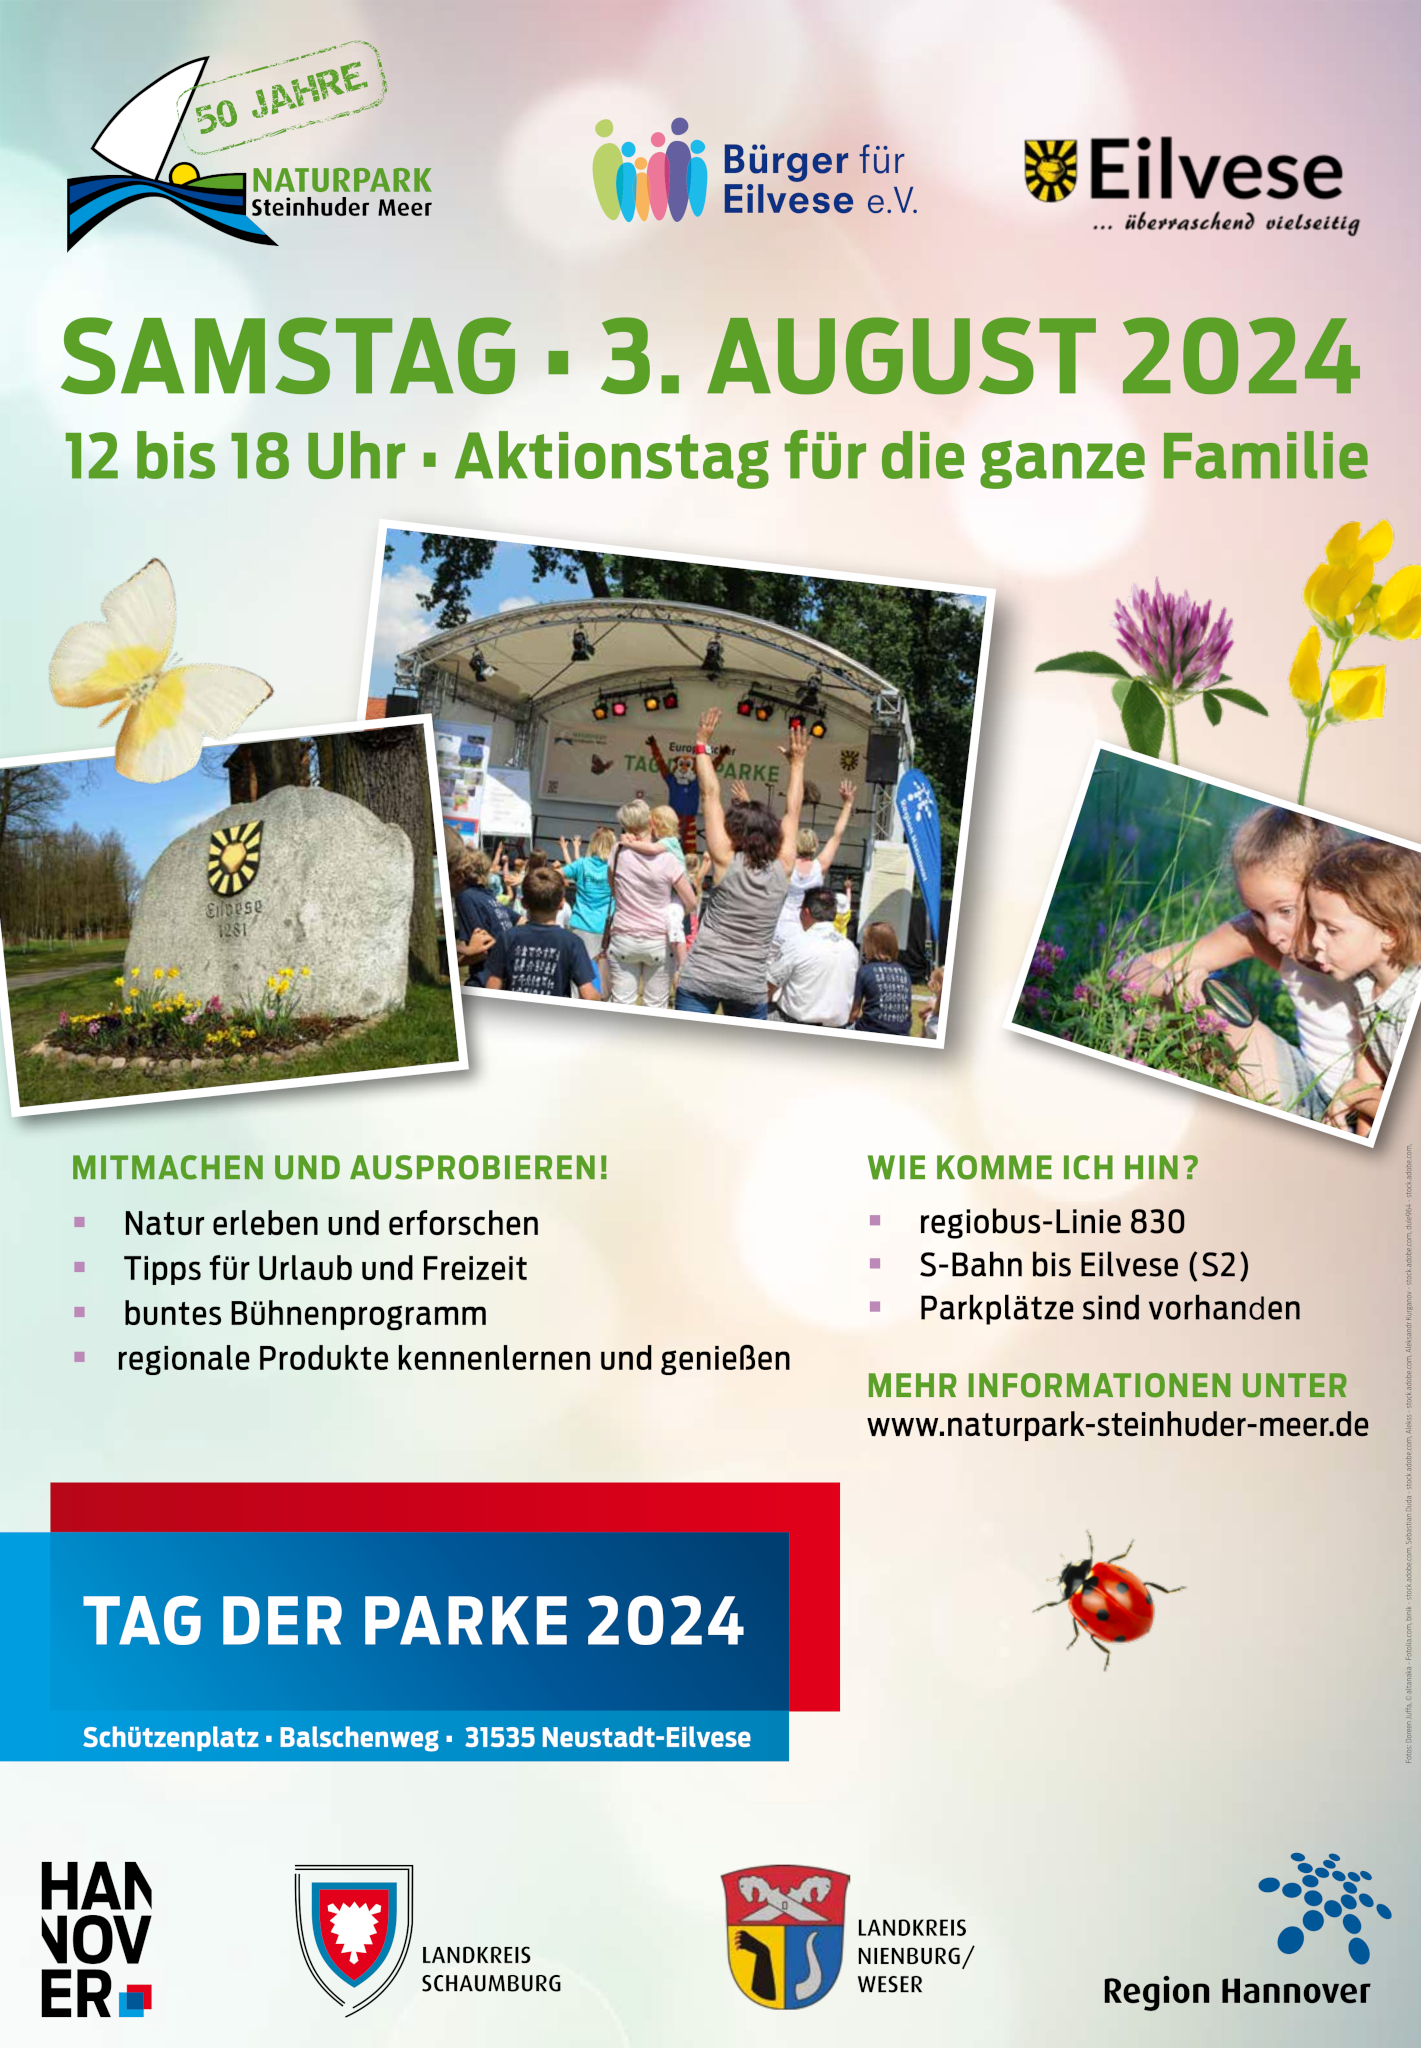 Plakat mit Informationen zum Tag der Parke 2024 in Eilvese am 3. August 2024